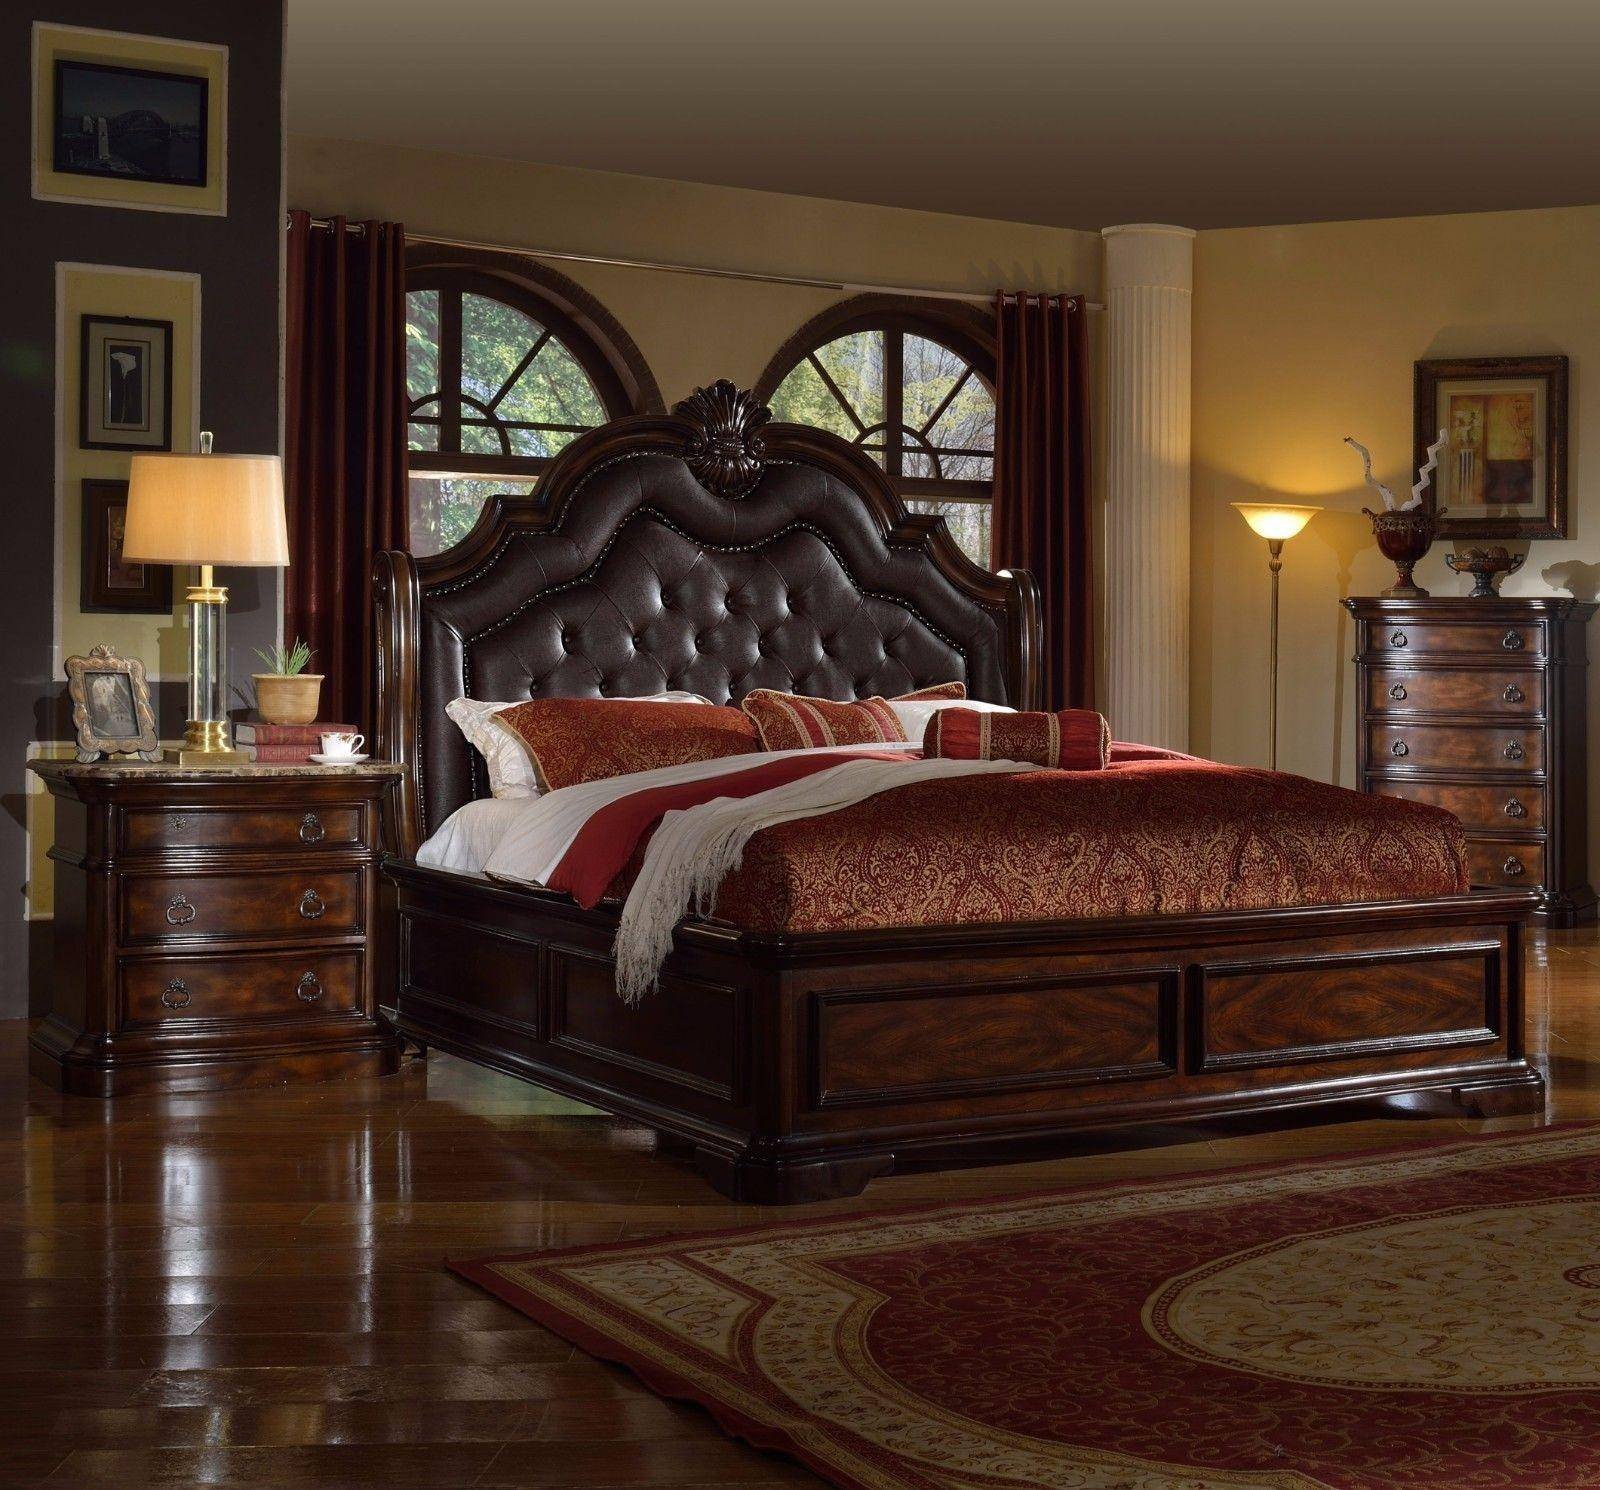 Bedroom Furniture King Size Bed